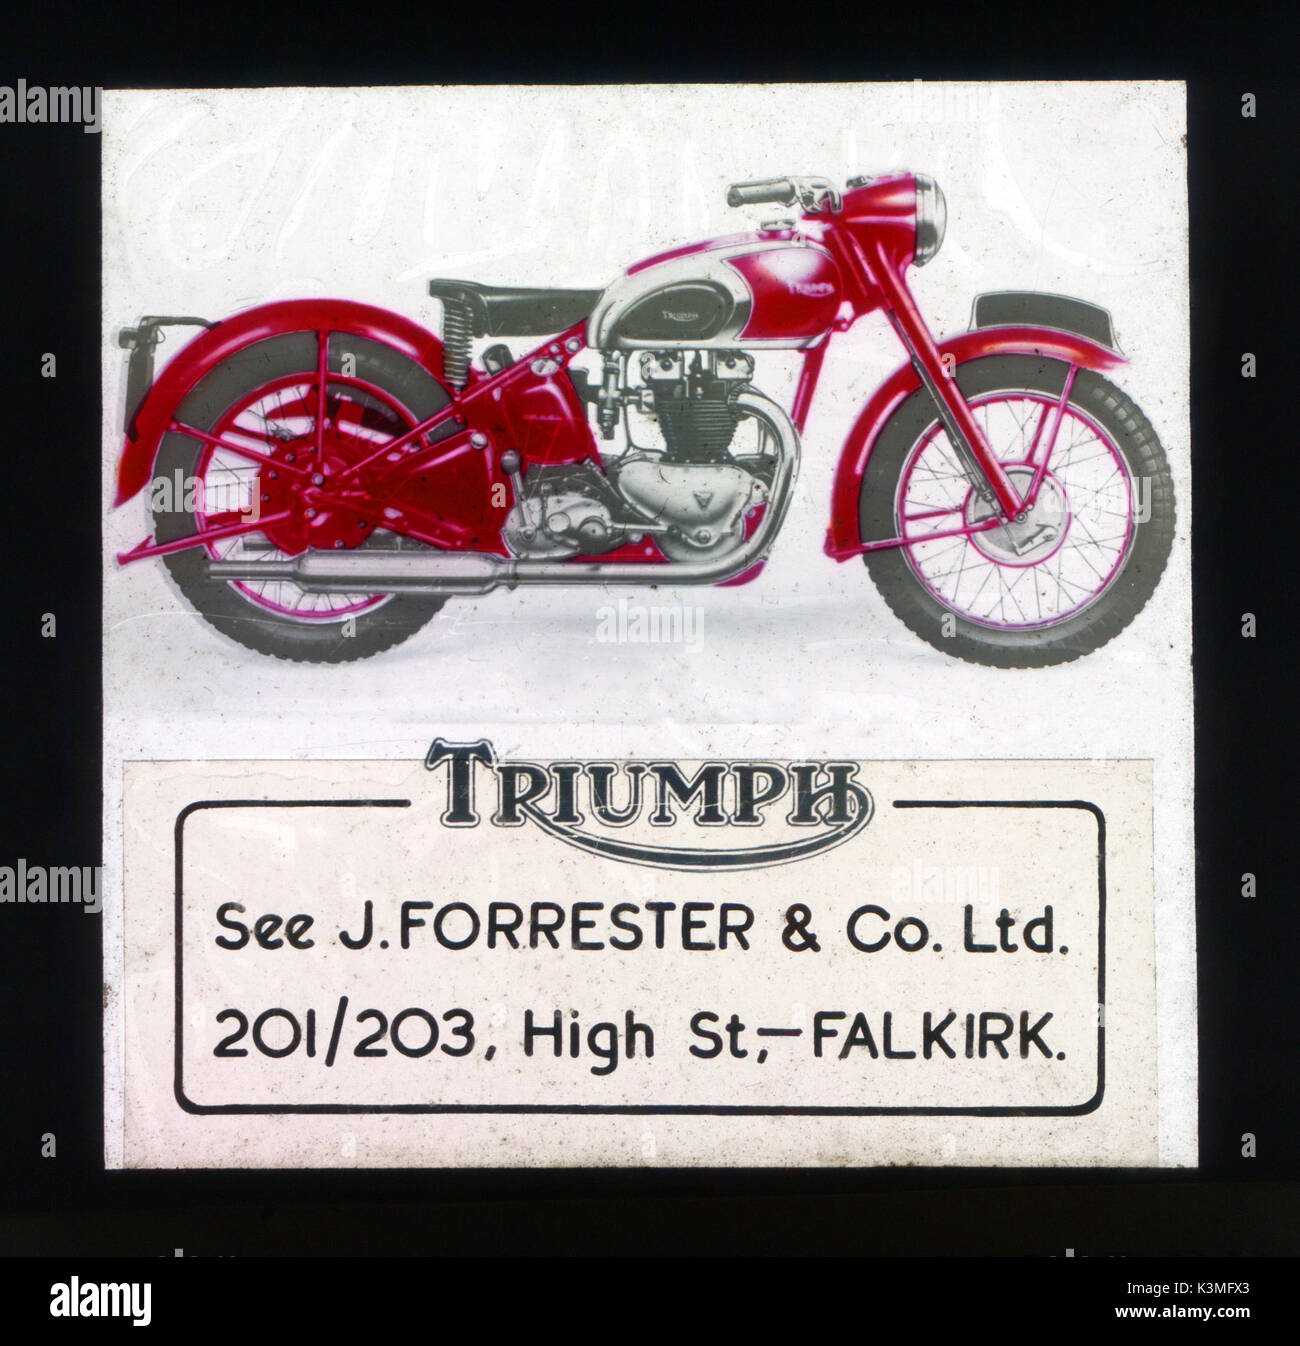 Kino WERBUNG FOLIE FÜR Triumph Motorräder in den Kinos der ABC-Kino in Falkirk, Schottland gezeigt Stockfoto